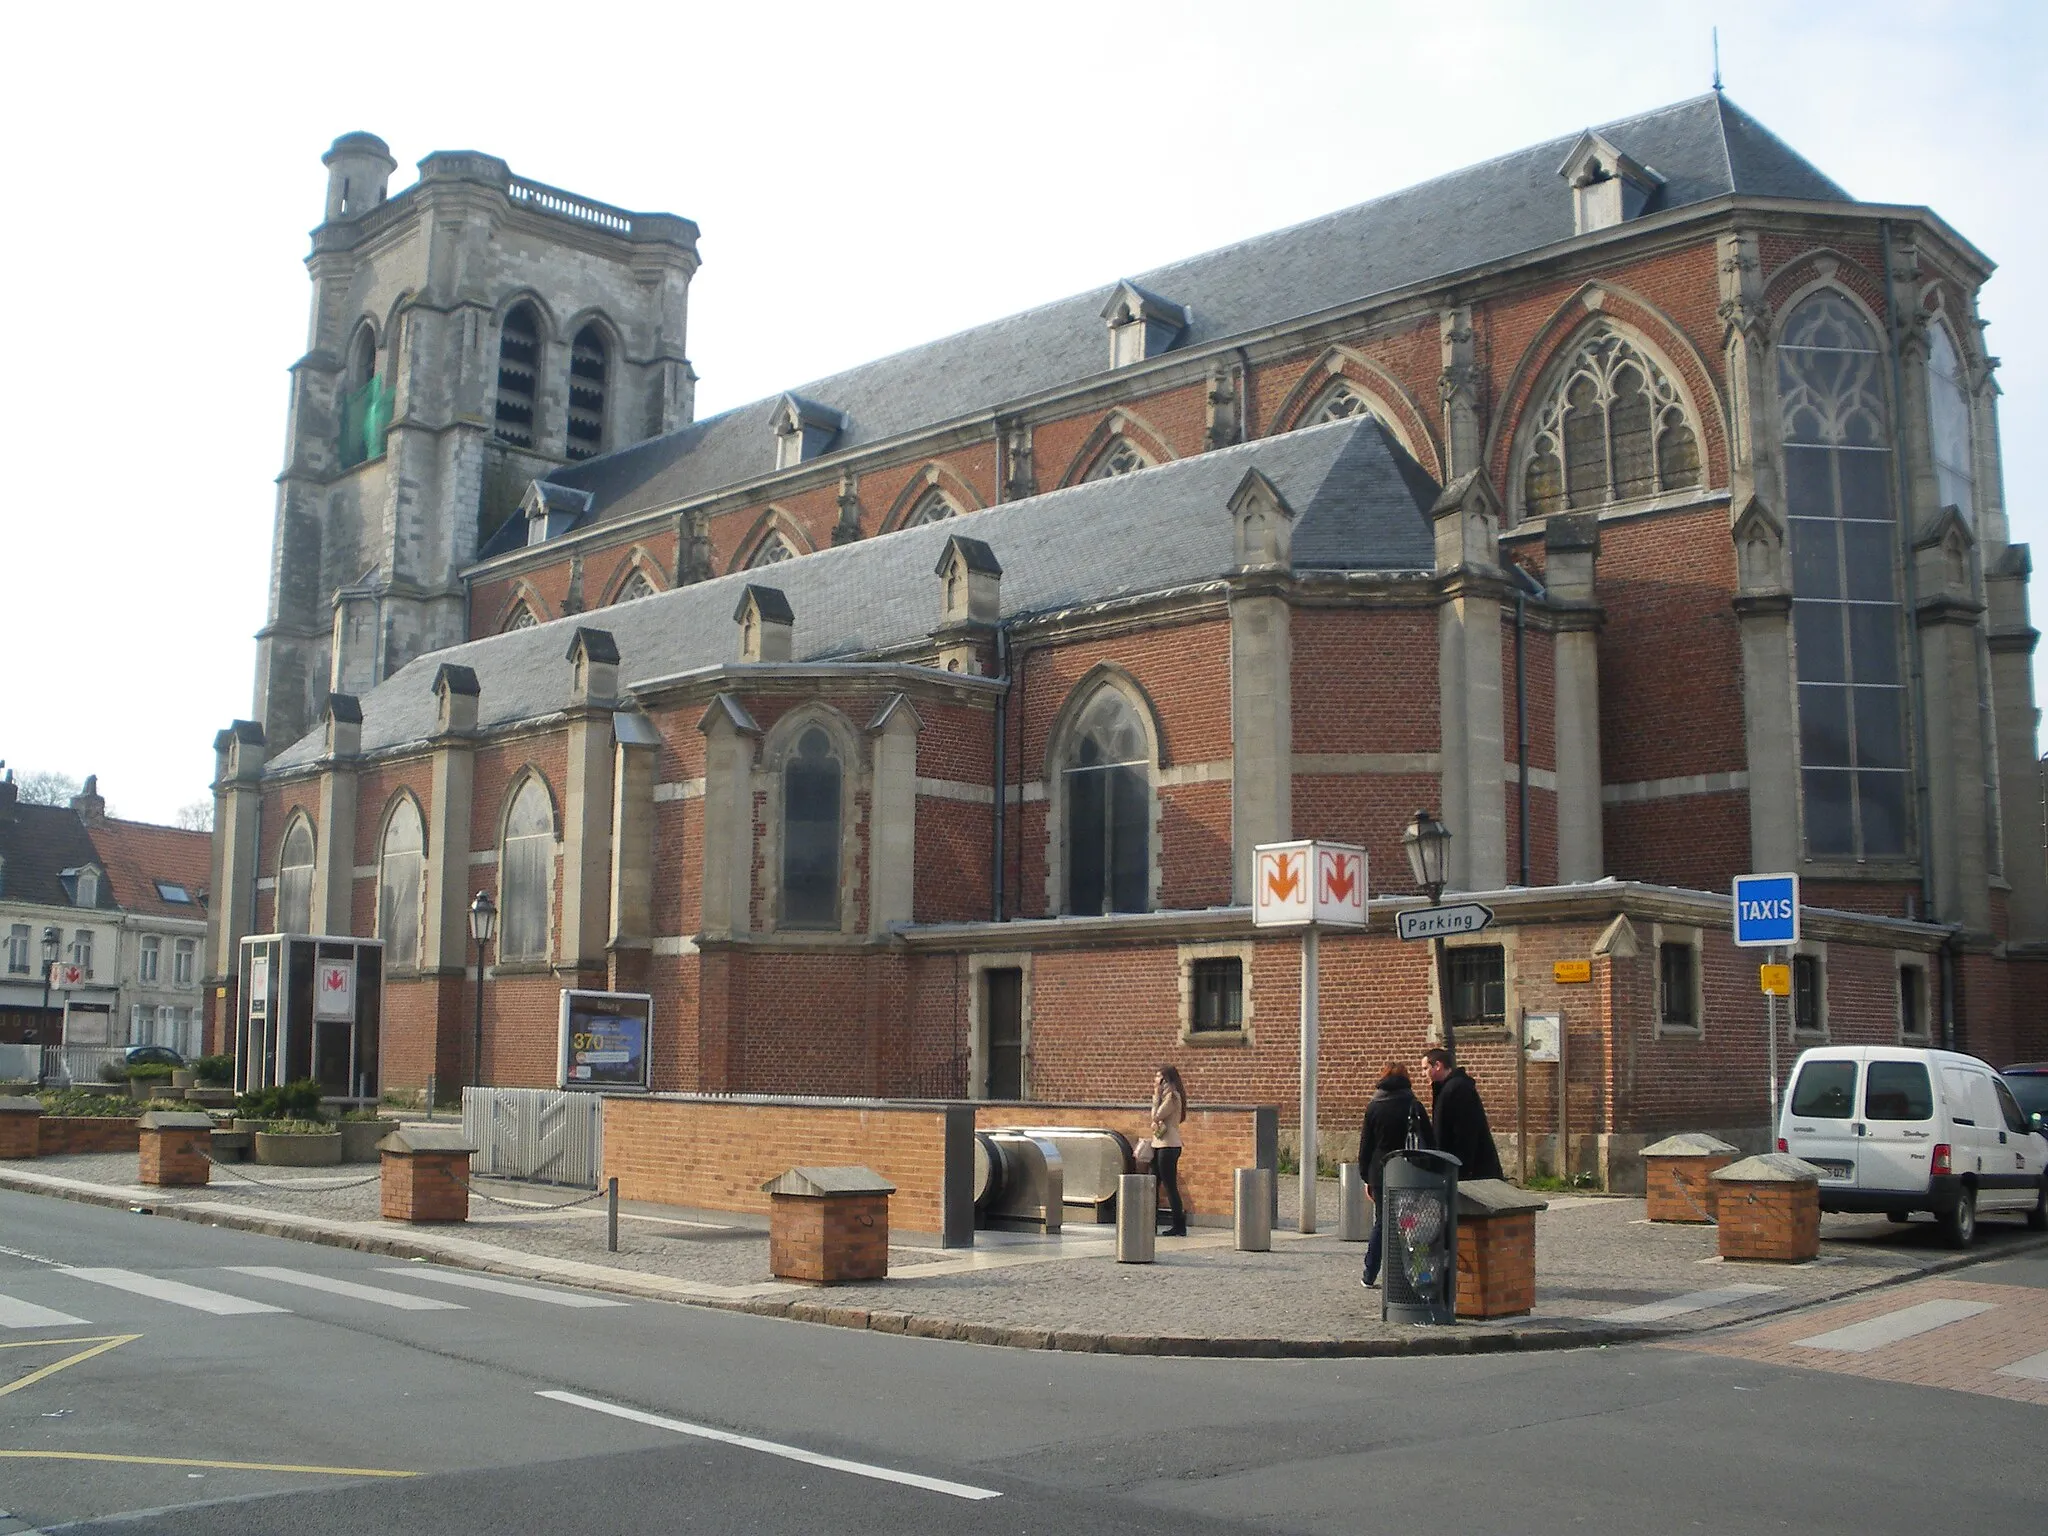 Photo showing: Vue de l'église Notre Dame de la Visitation et de la de la station de métro "Bourg" de la ligne 2 du métro de Lille, situées dans la commune de Lomme.